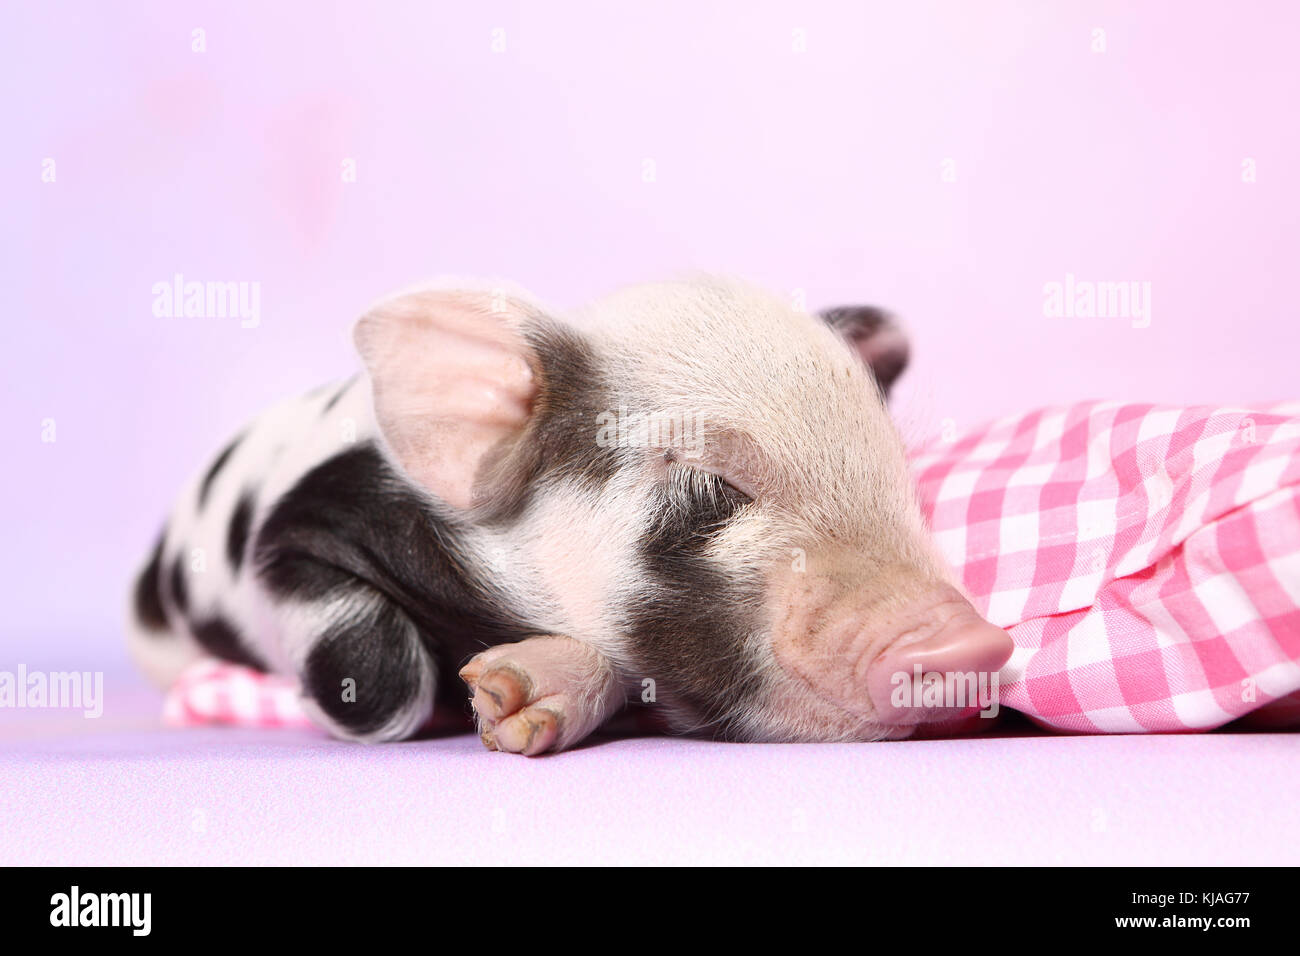 Hausschwein, Turopolje x?. Ferkel schlafen auf rosa-karierten Kissen. Studio Bild gegen einen rosa Hintergrund gesehen. Deutschland Stockfoto